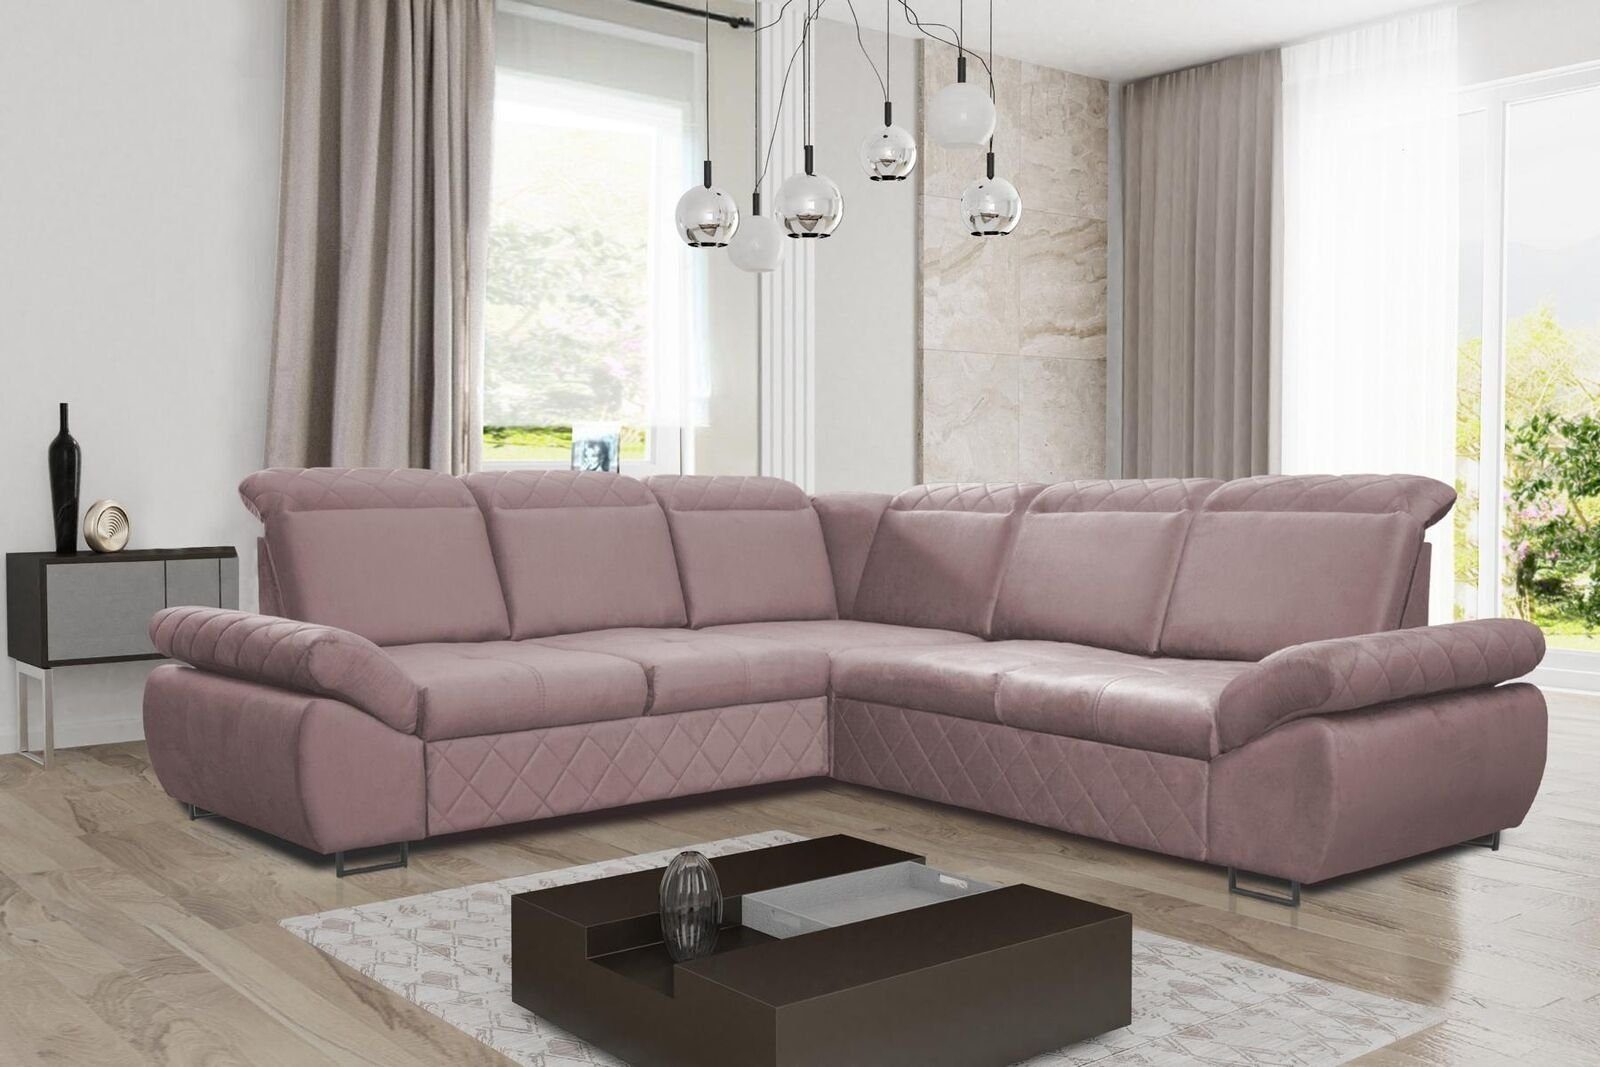 JVmoebel Ecksofa Moderne Design Sofas Couchs Möbel Textil LForm Neu Wohnzimmer Ecksofa, Mit Bettfunktion Rosa | Ecksofas